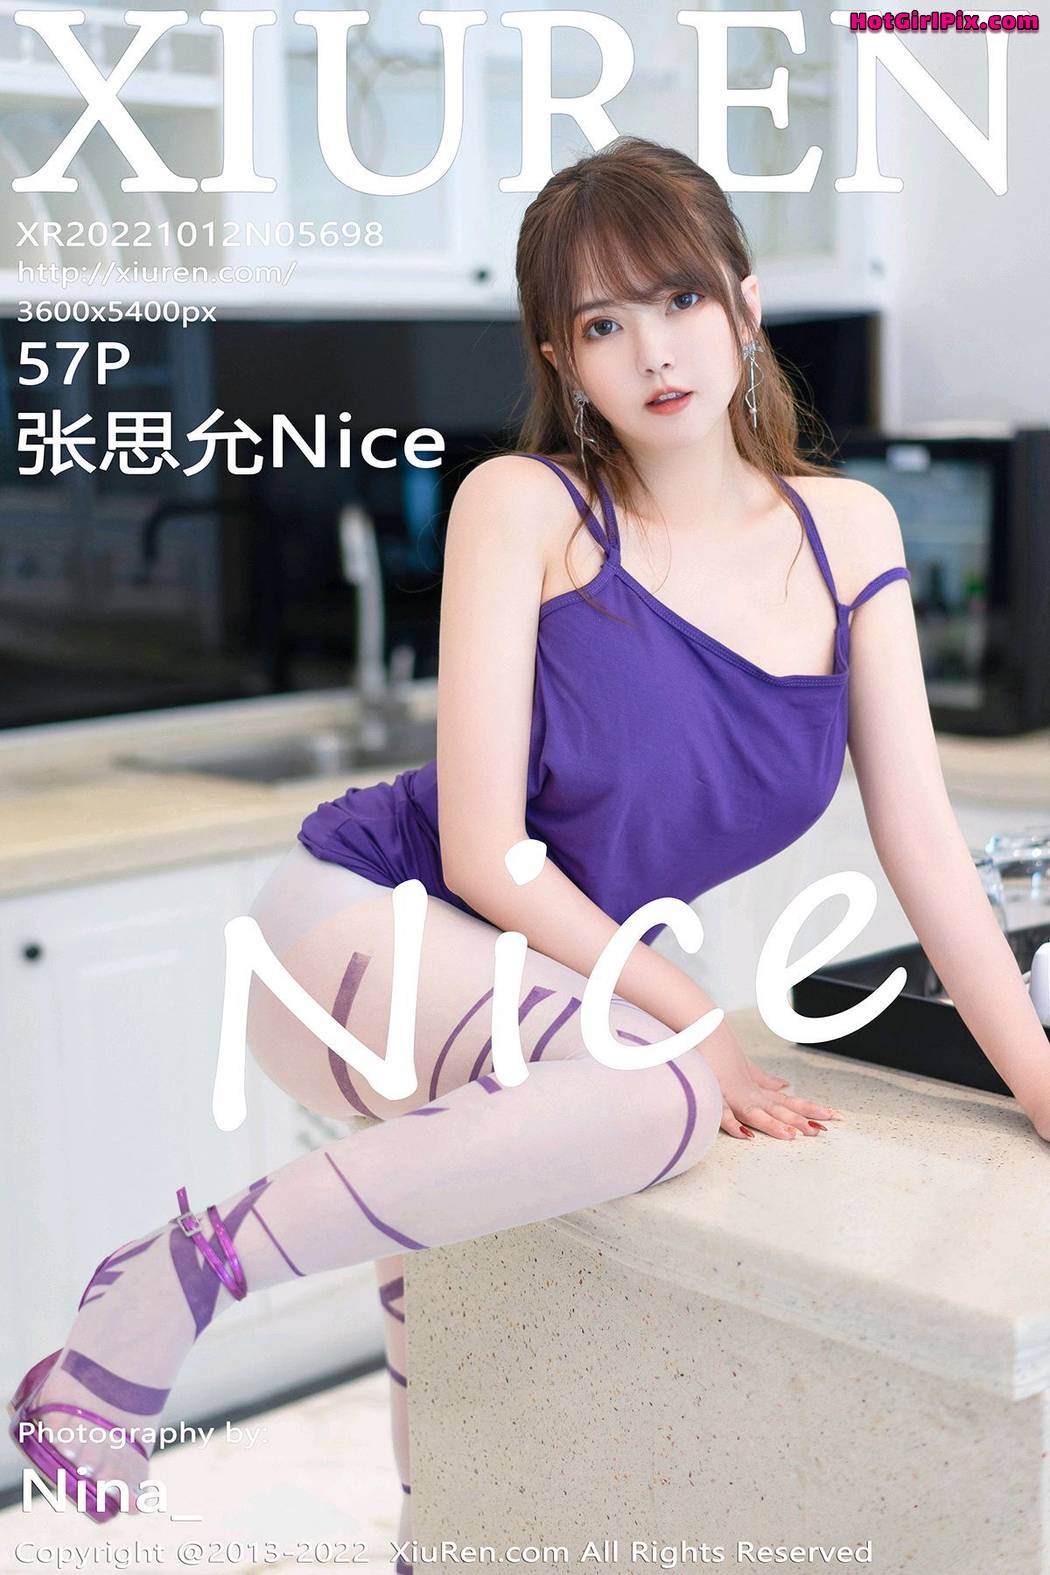 [XIUREN] No.5698 Zhang Si Yun 张思允Nice Cover Photo